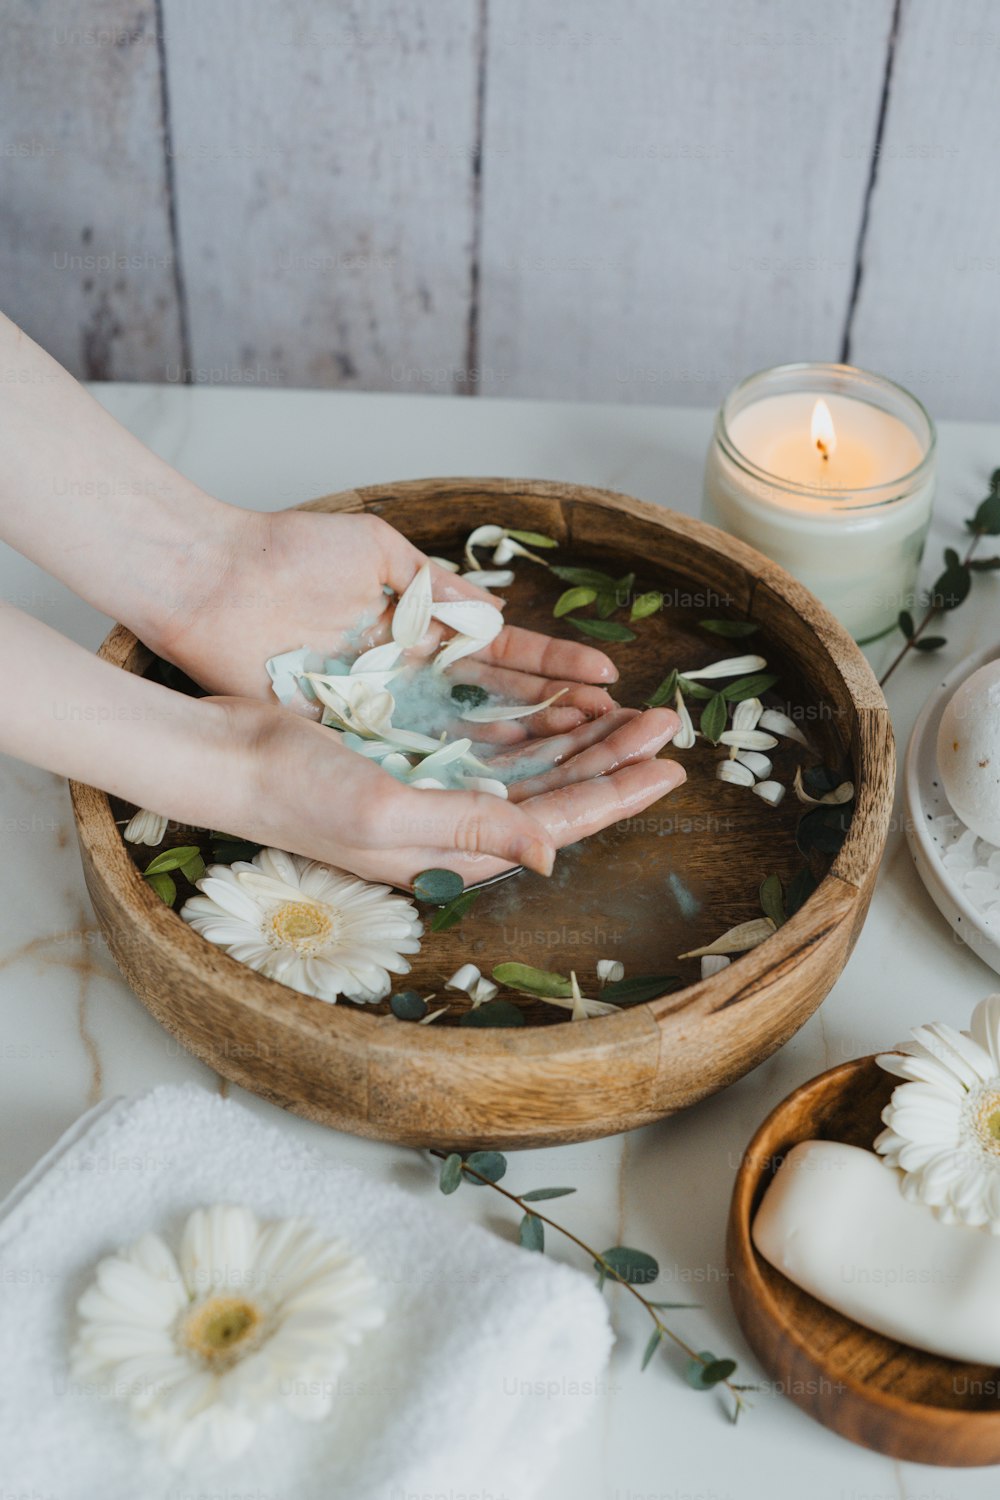 Le mani di una persona su una ciotola di legno con fiori e candele